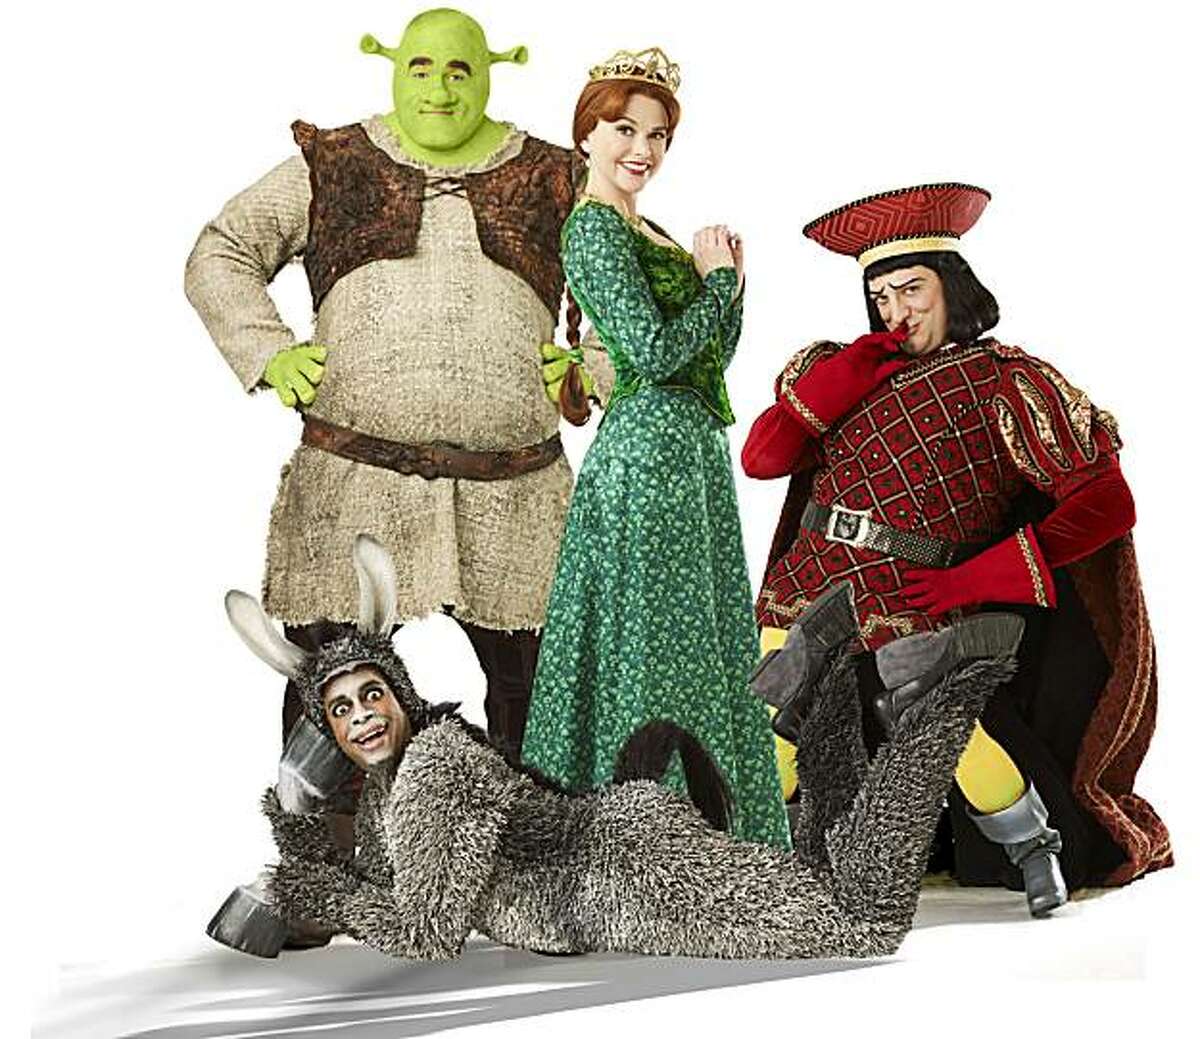 "Shrek the Musical."